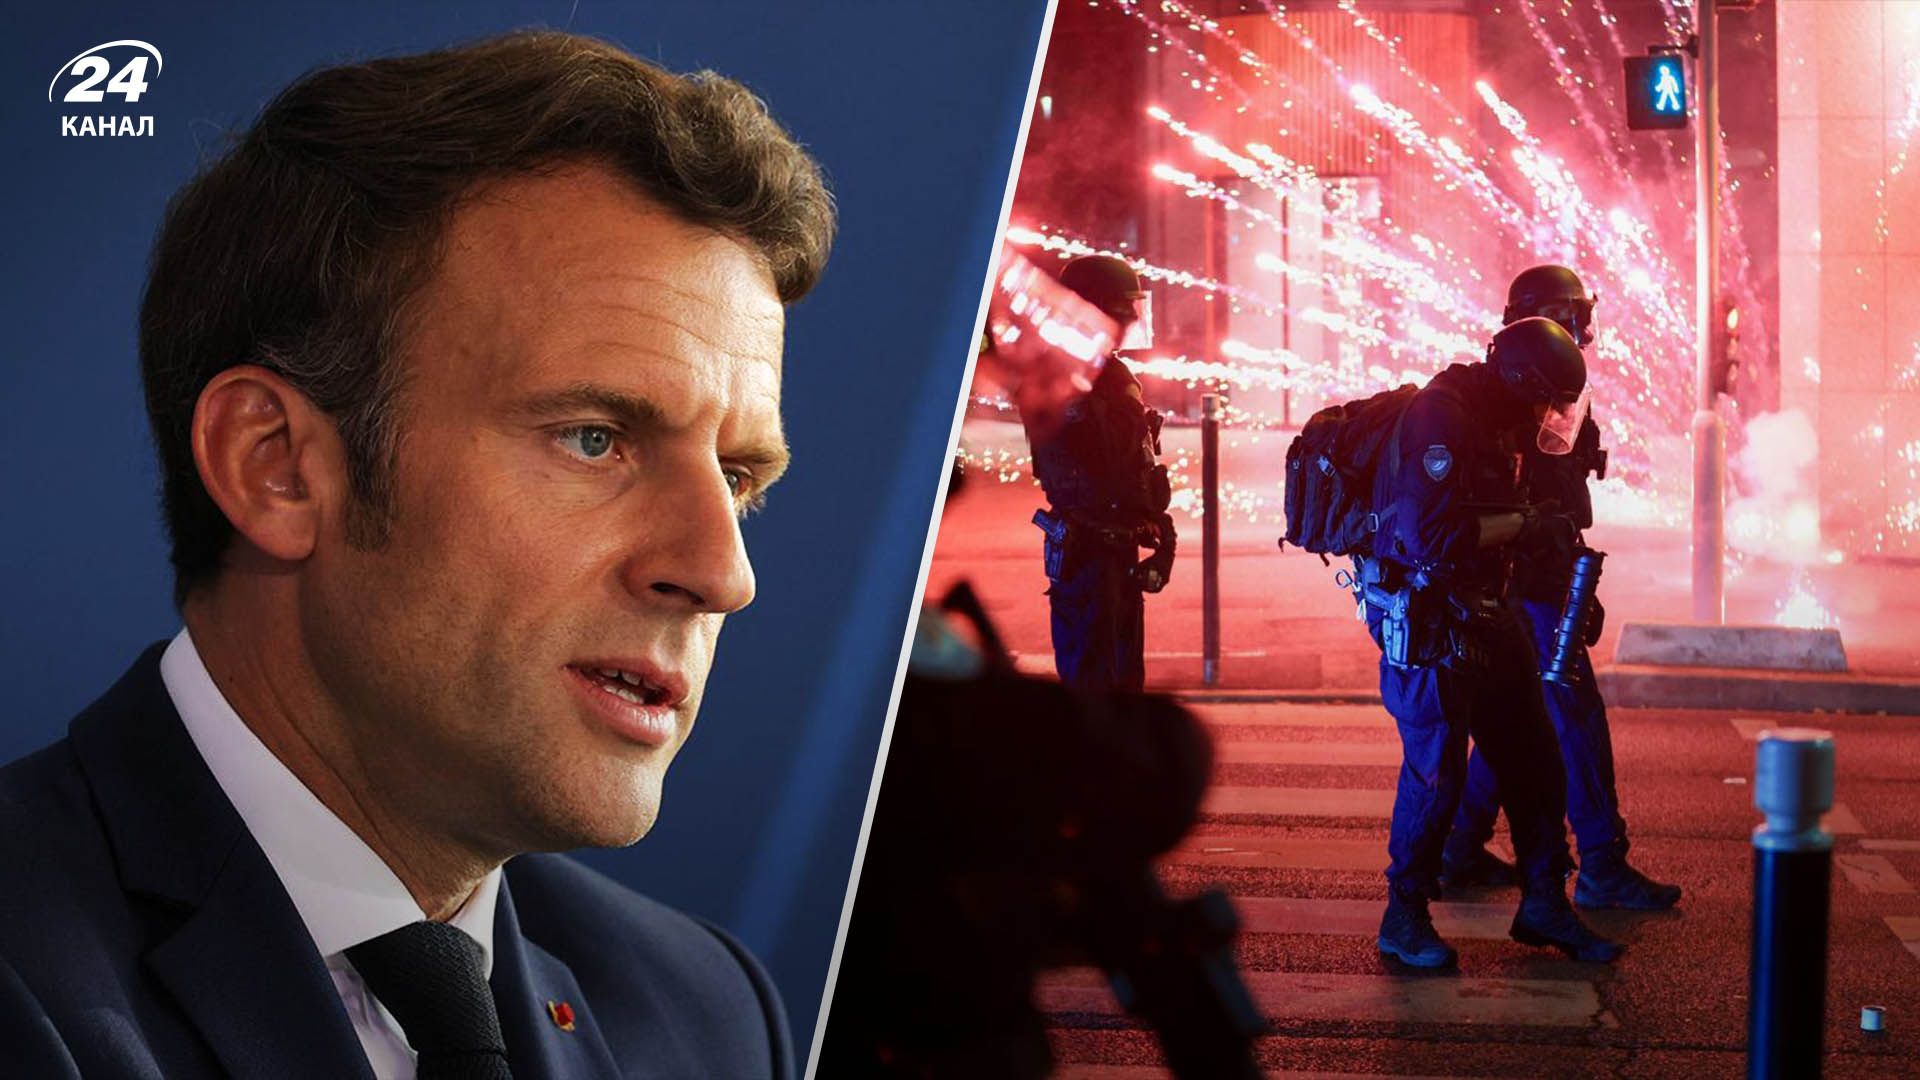 Убийство подростка во Франции: Макрон собирает кризисное заседание правительства из-за массовых беспорядков - 24 Канал